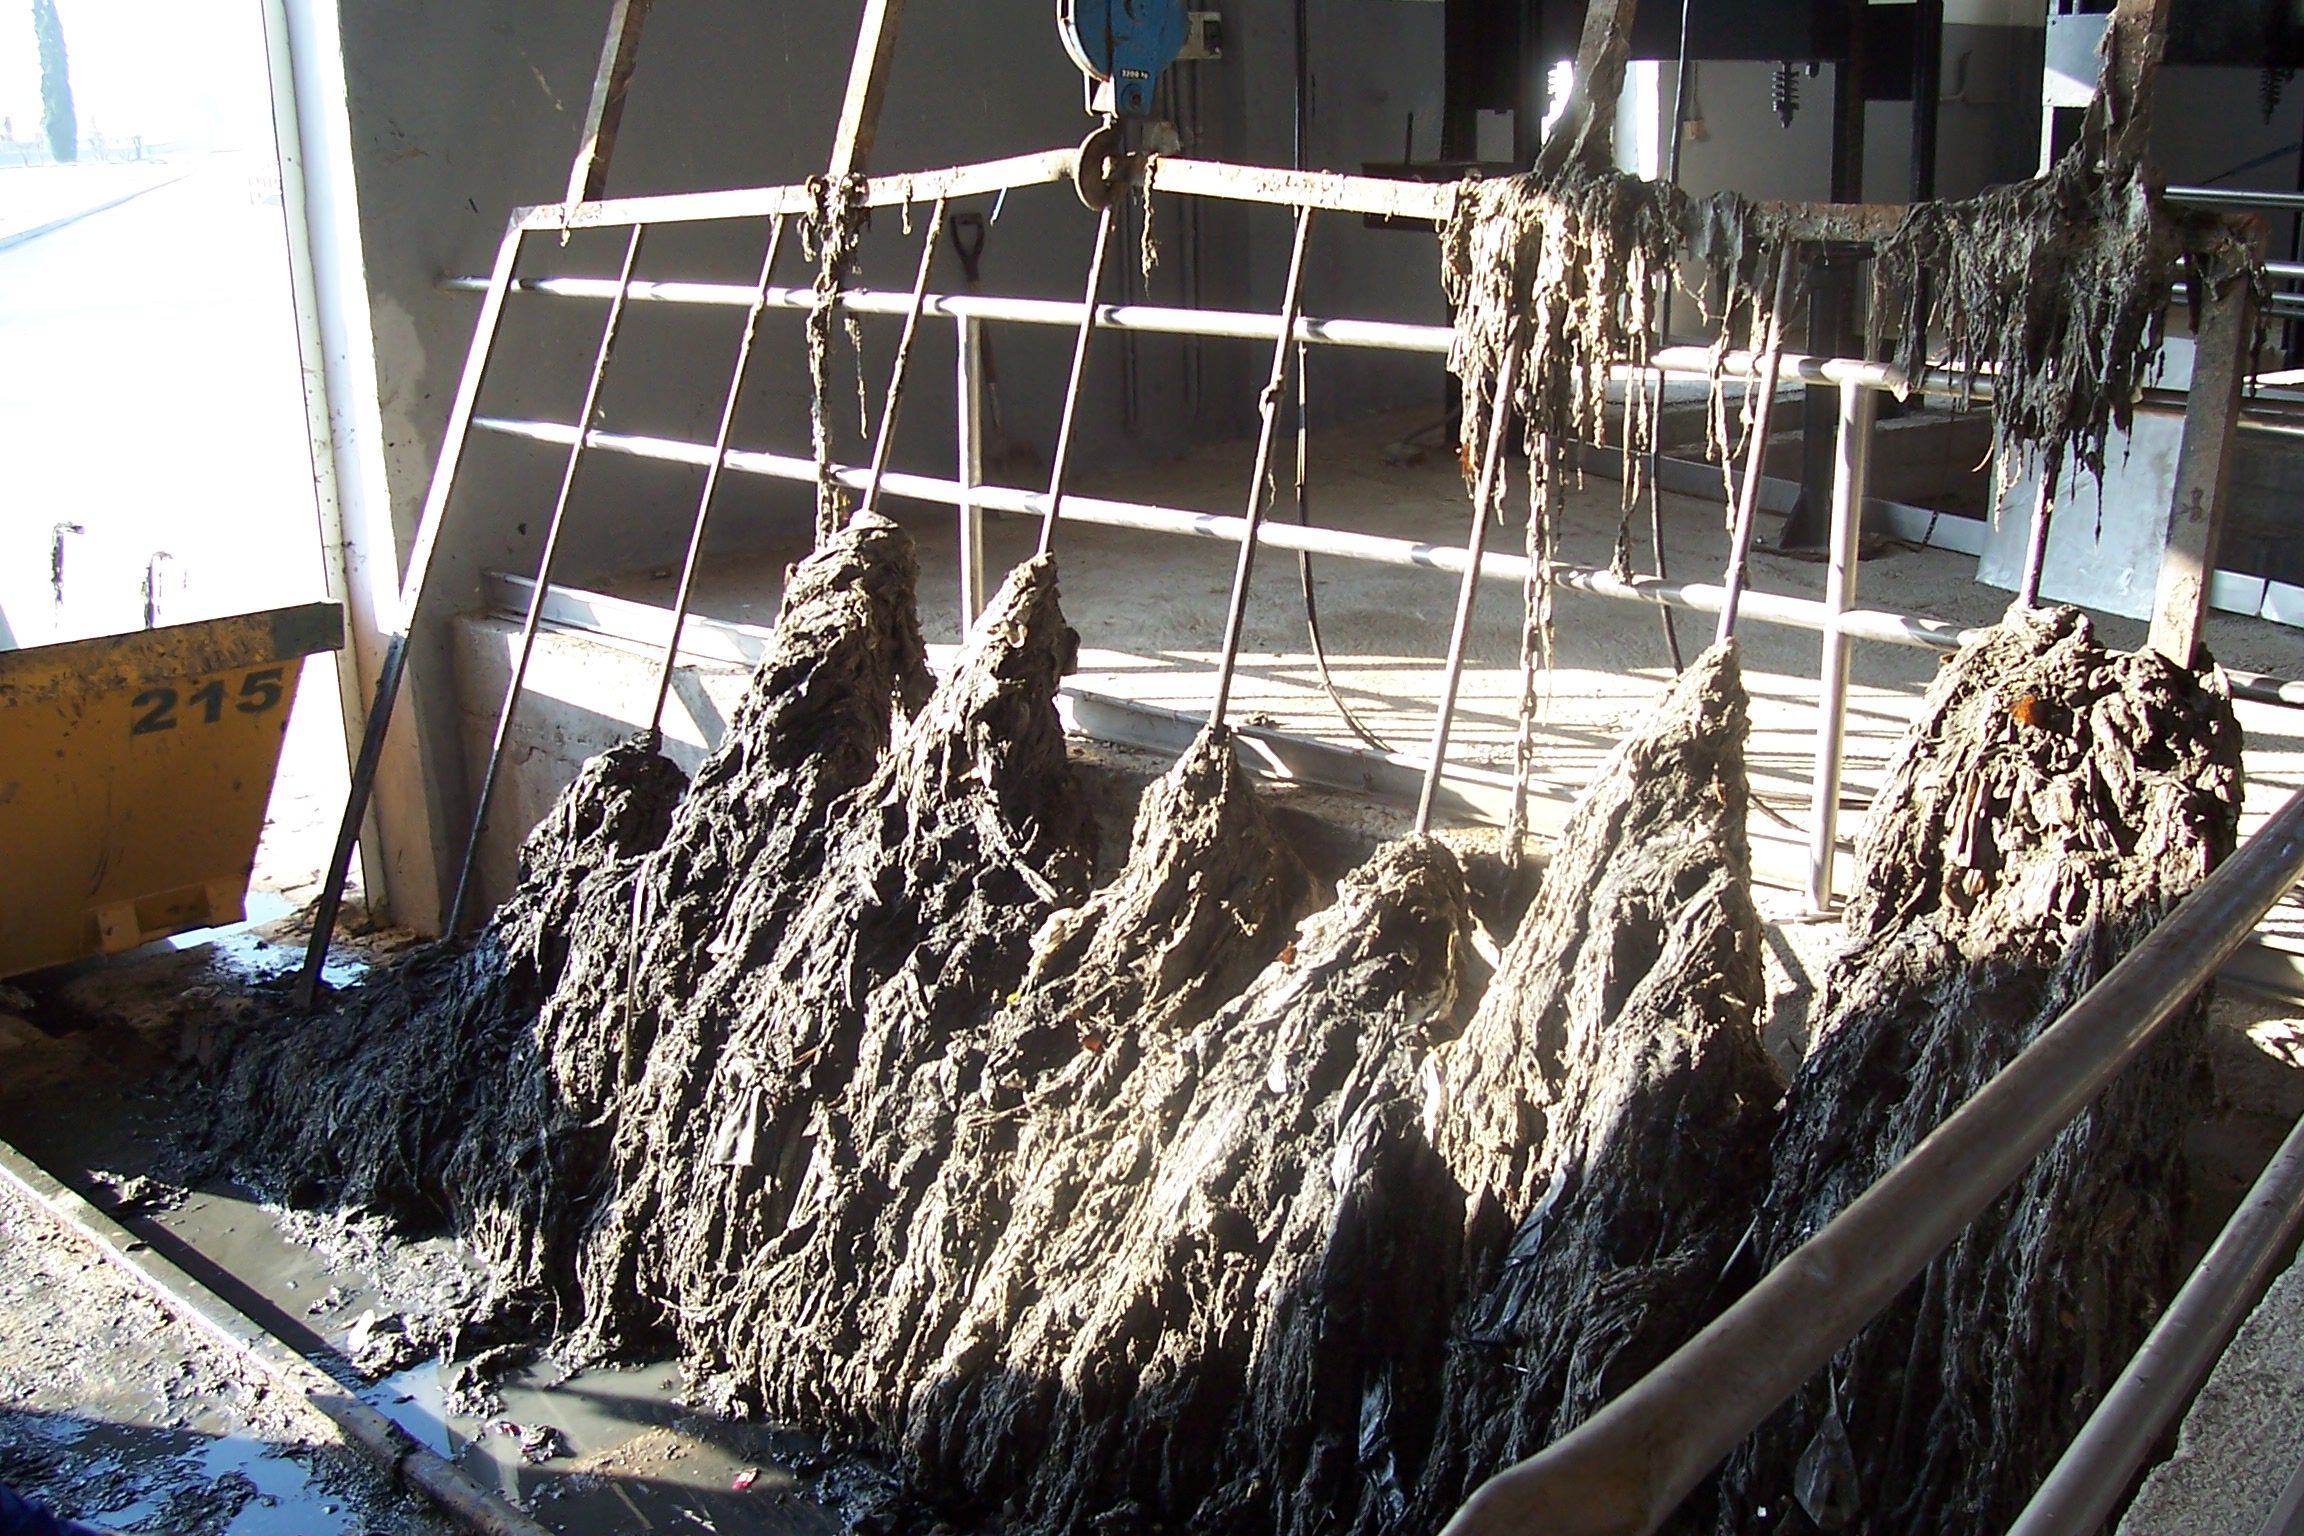 Cientos de toallitas apelmazadas en uno de los filtros de la depuradora de Jerez.